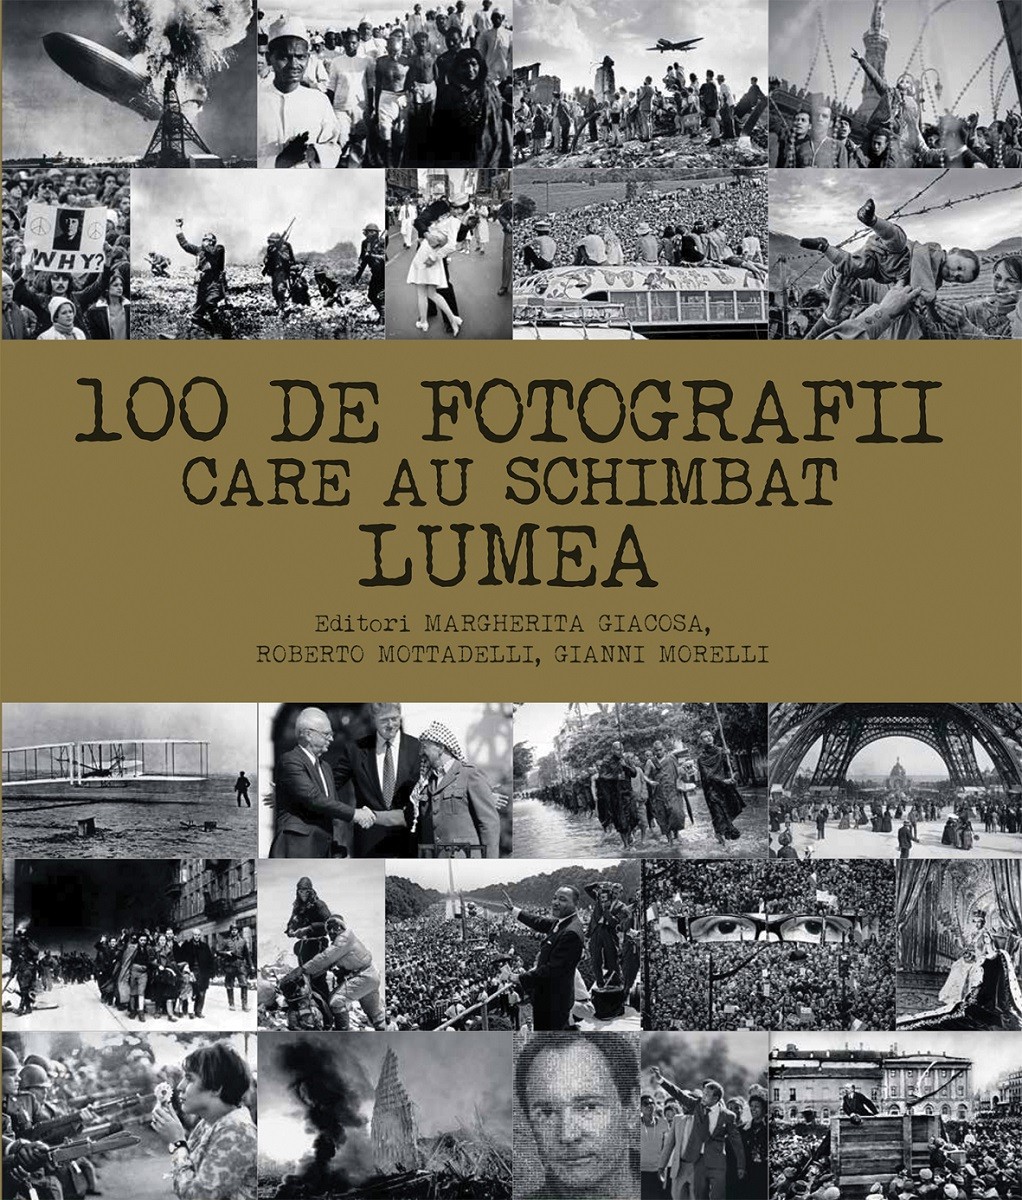 100 de fotografii care au schimbat lumea | Margherita Giacosa, Roberto Mottadelli, Gianni Morelli carturesti.ro